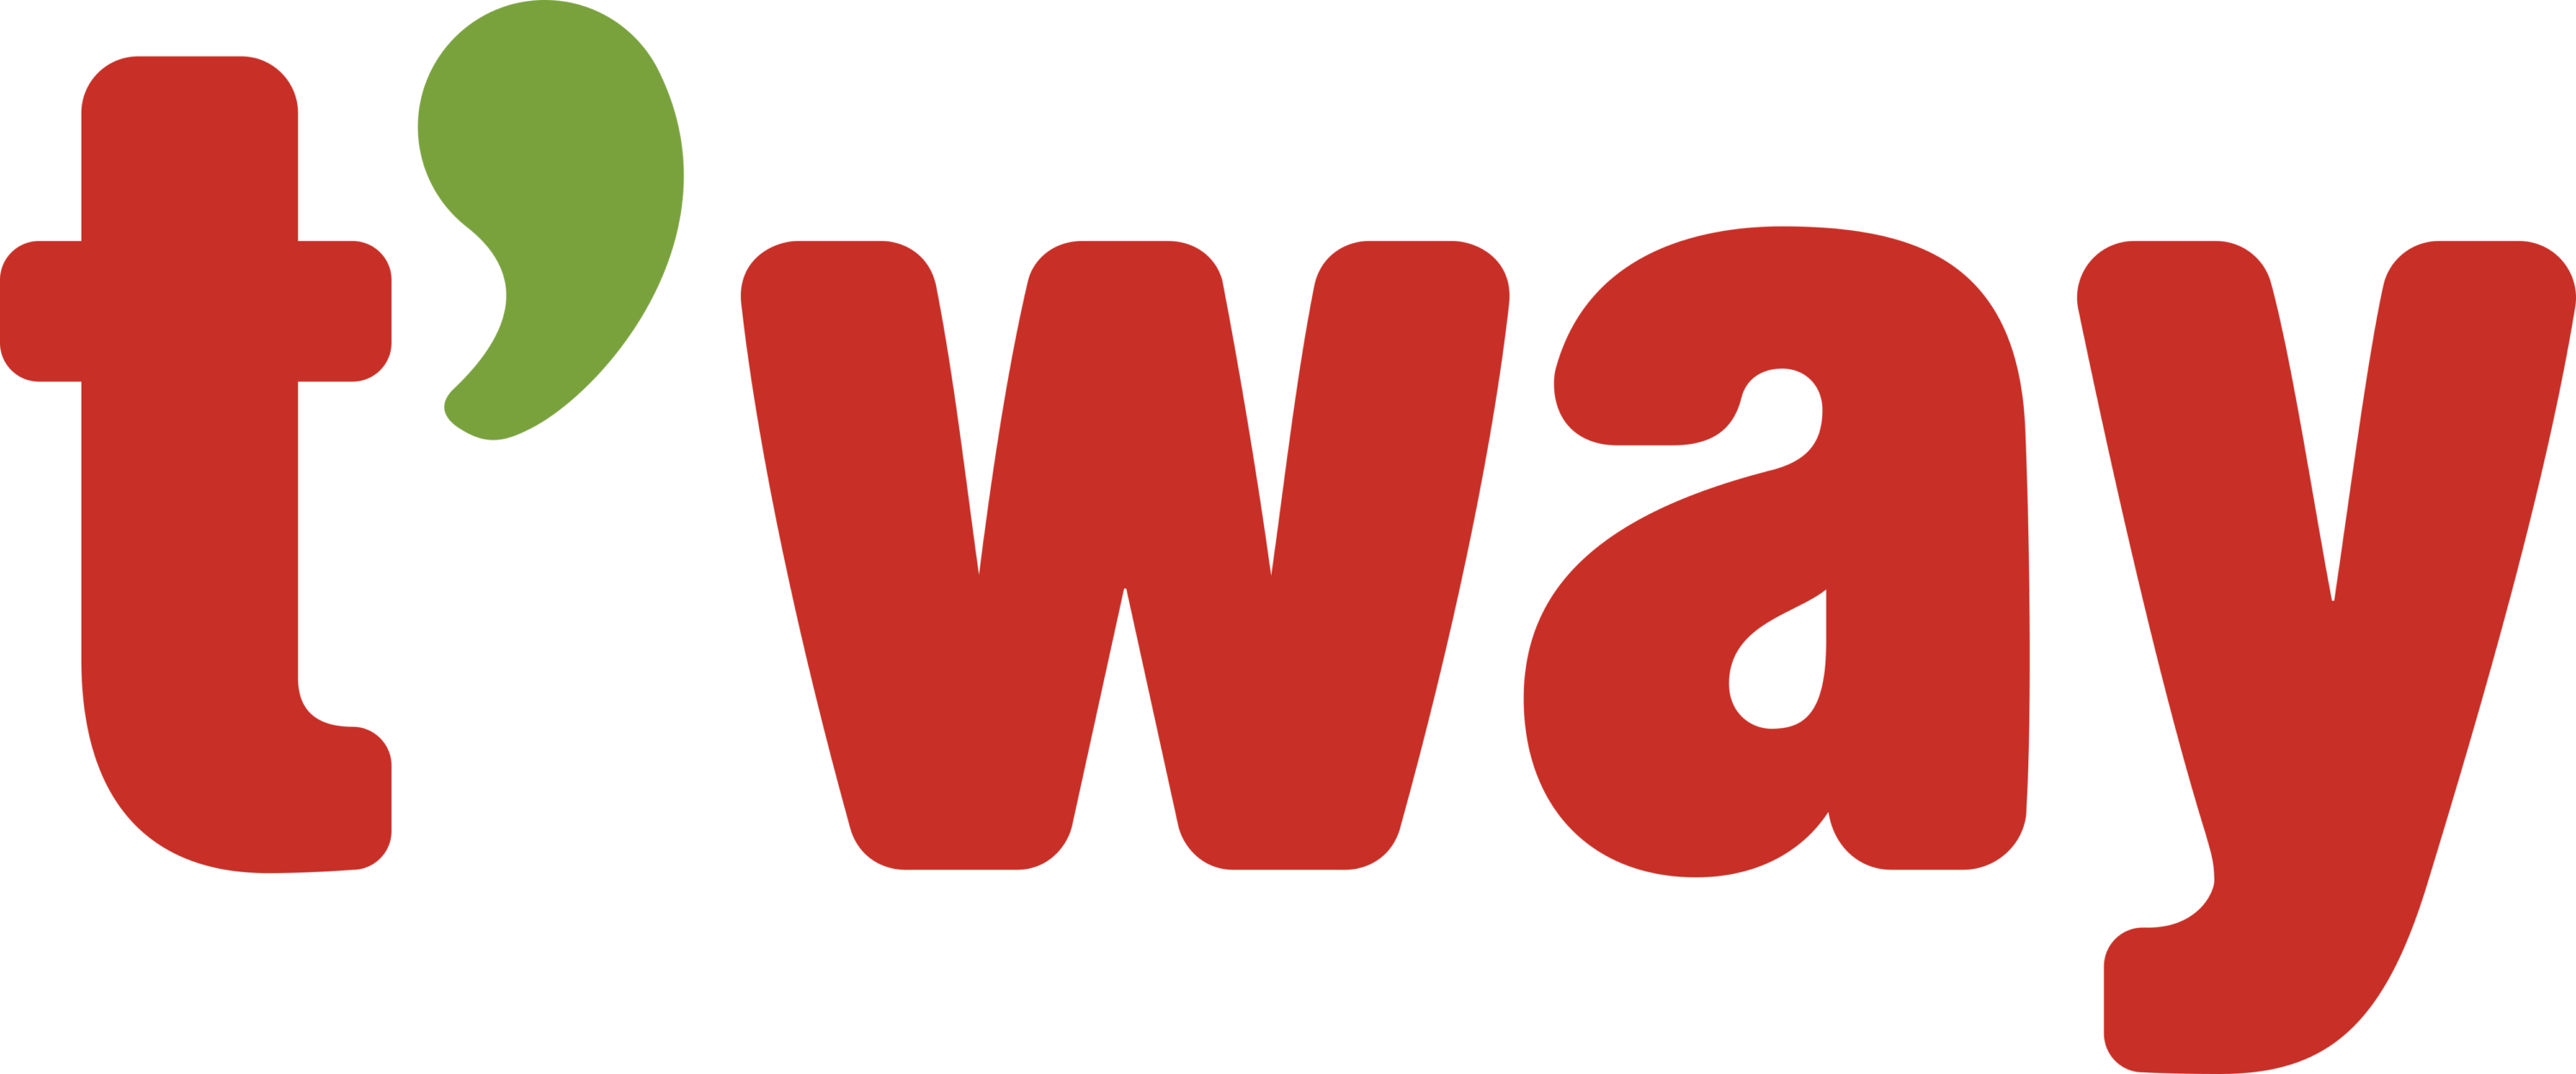 T'way Air Logo